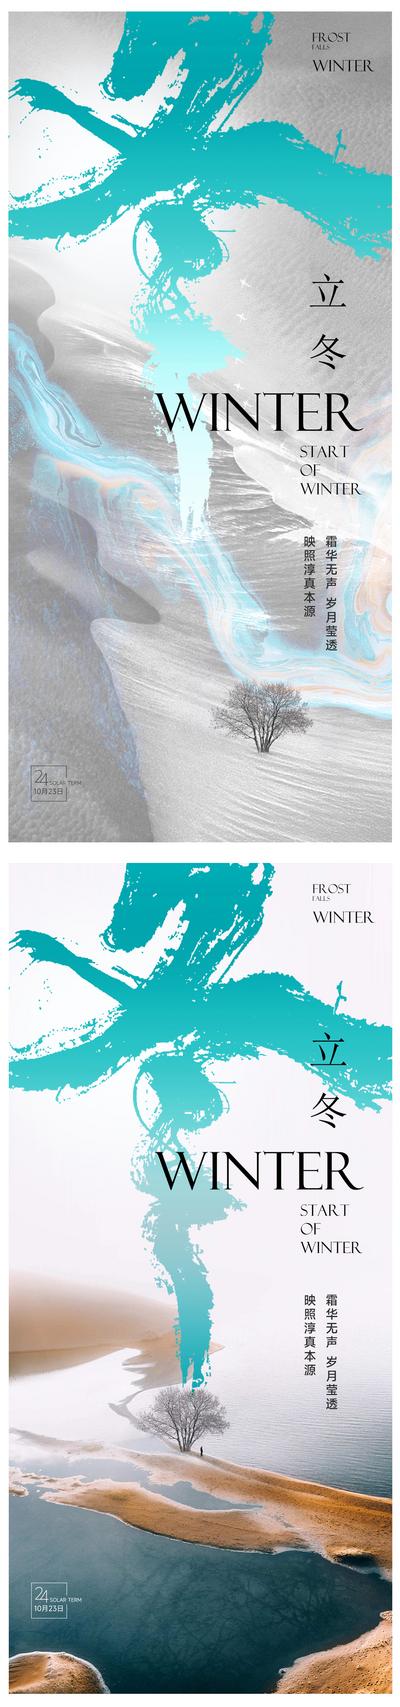 南门网 海报  二十四节气  立冬 意境 高端  质感  新中式  毛笔字